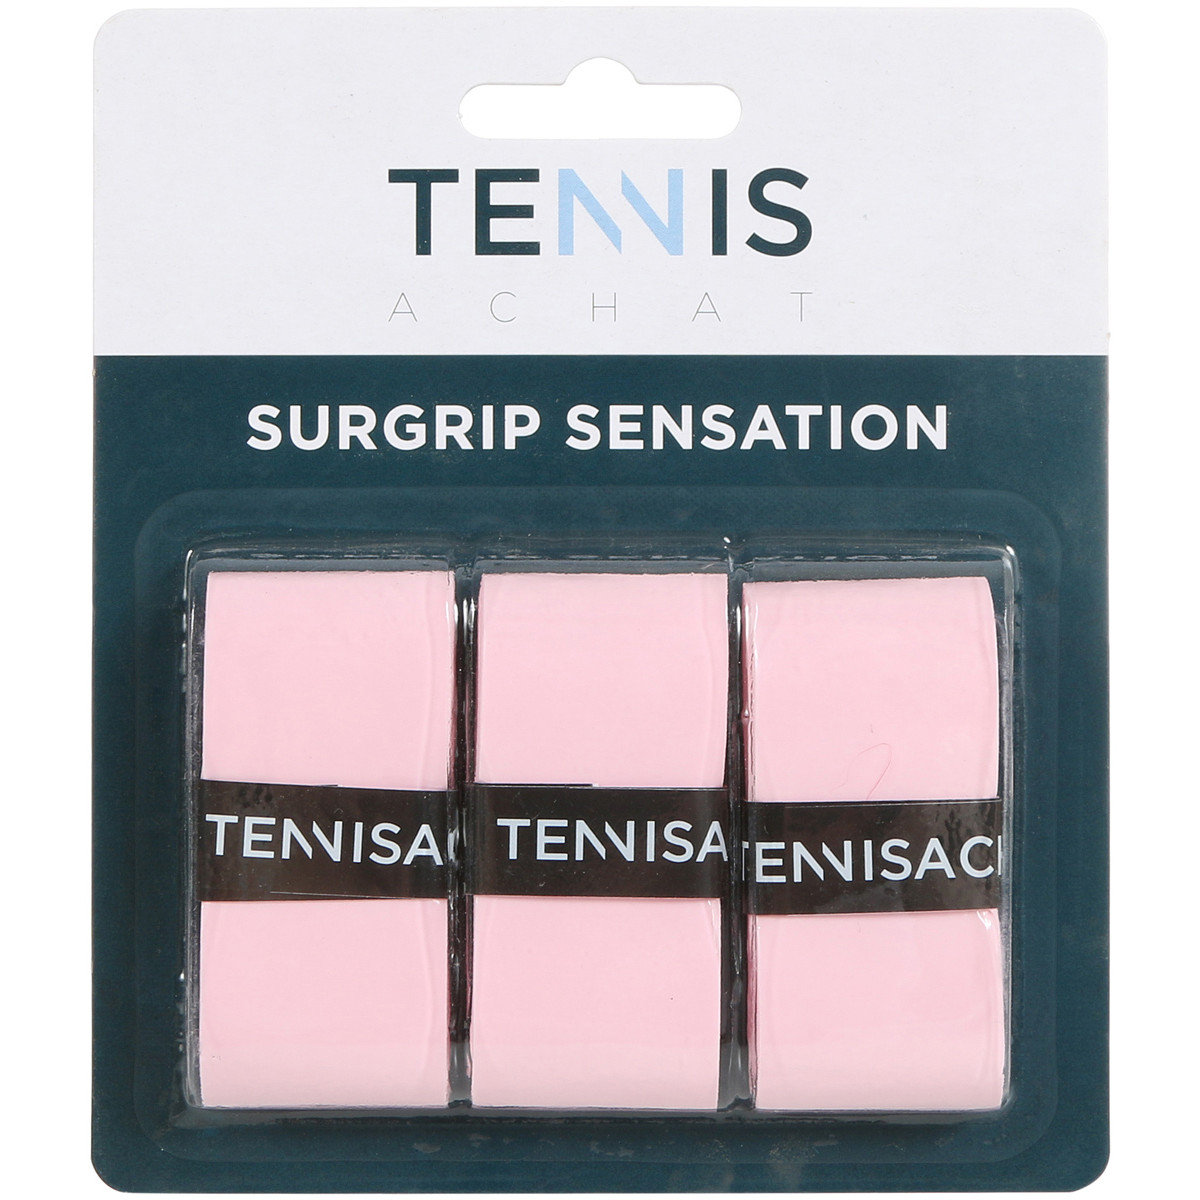 3 Surgrips Tennis Achat Sensation Roses 